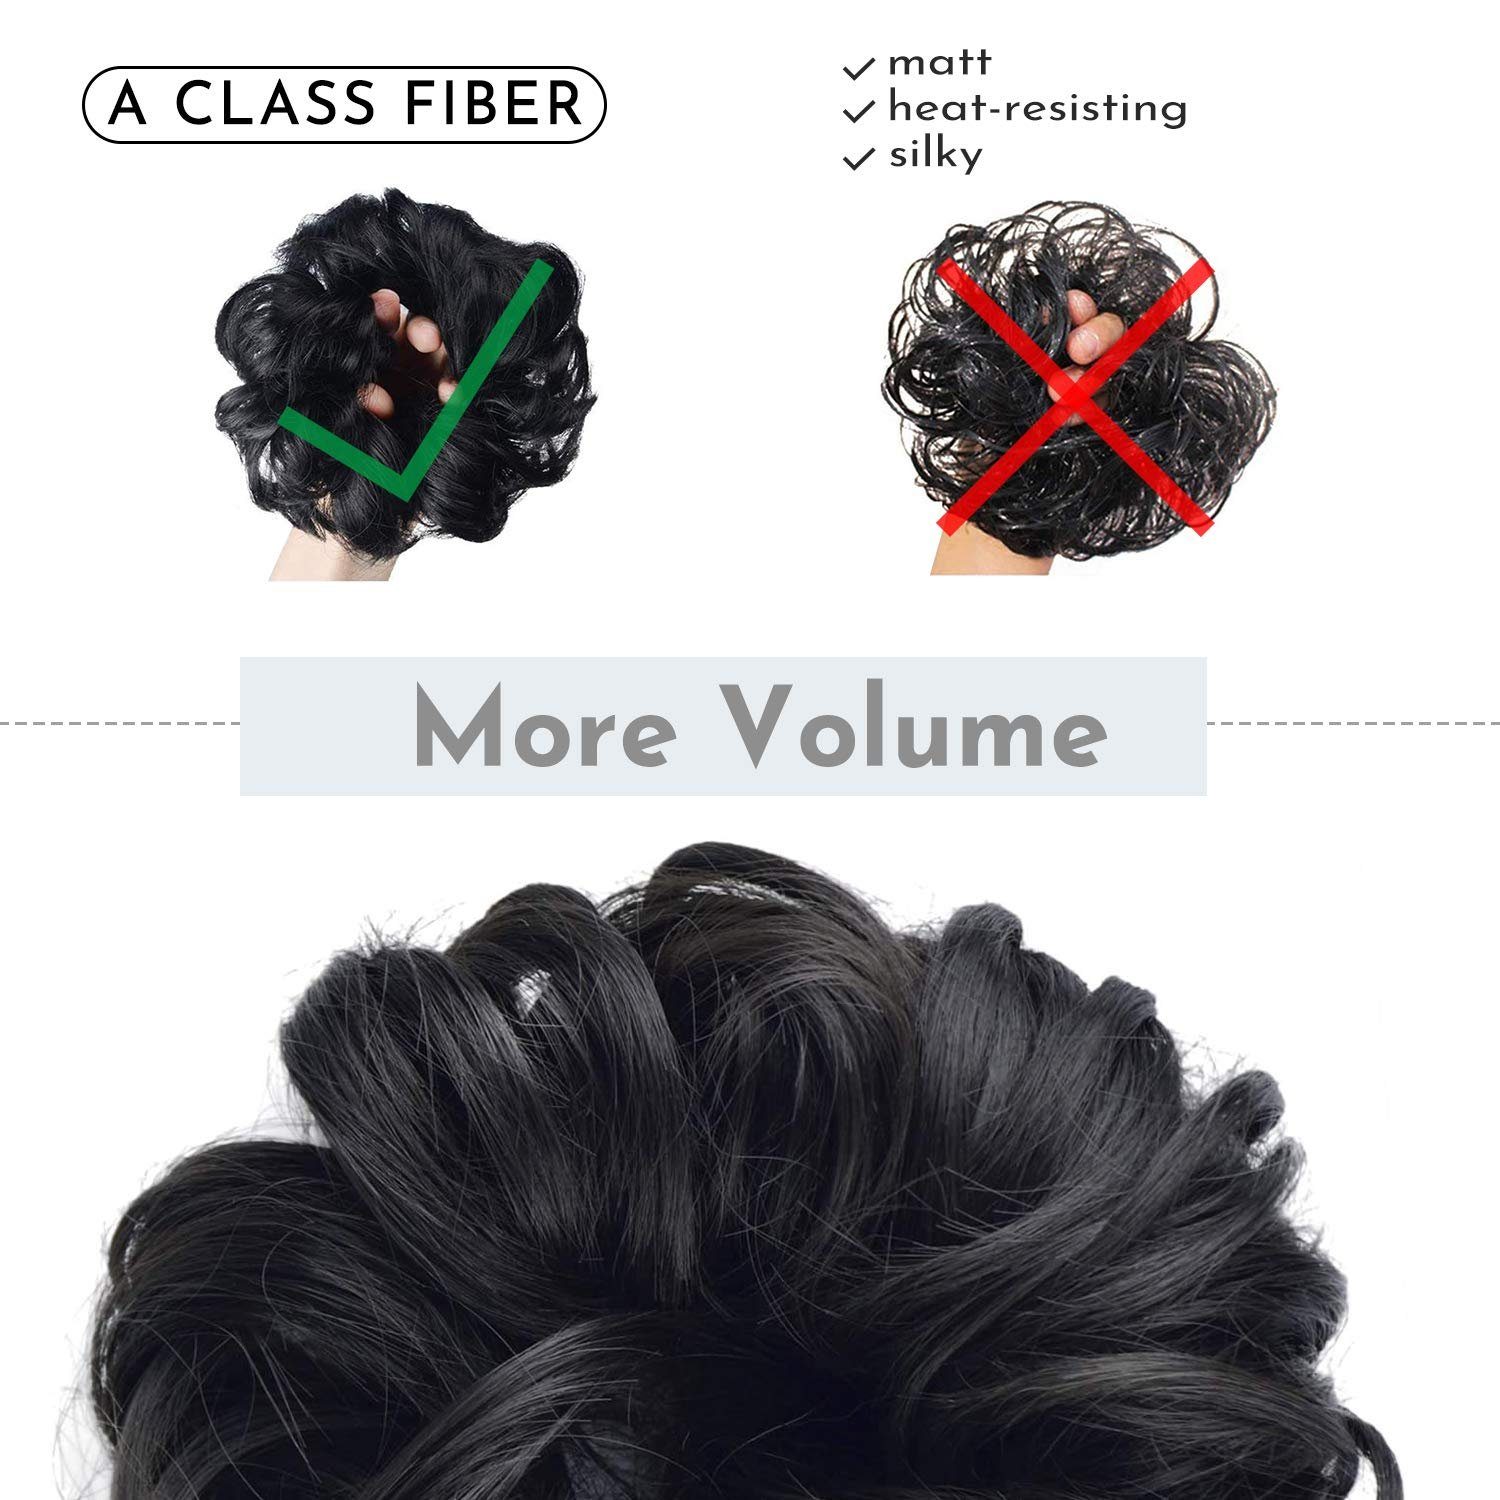 SCHUTA Kunsthaar-Extension Mittelbraun für Hochsteckfrisuren, Frauen,Haarverlängerung Haargummi Haarteil